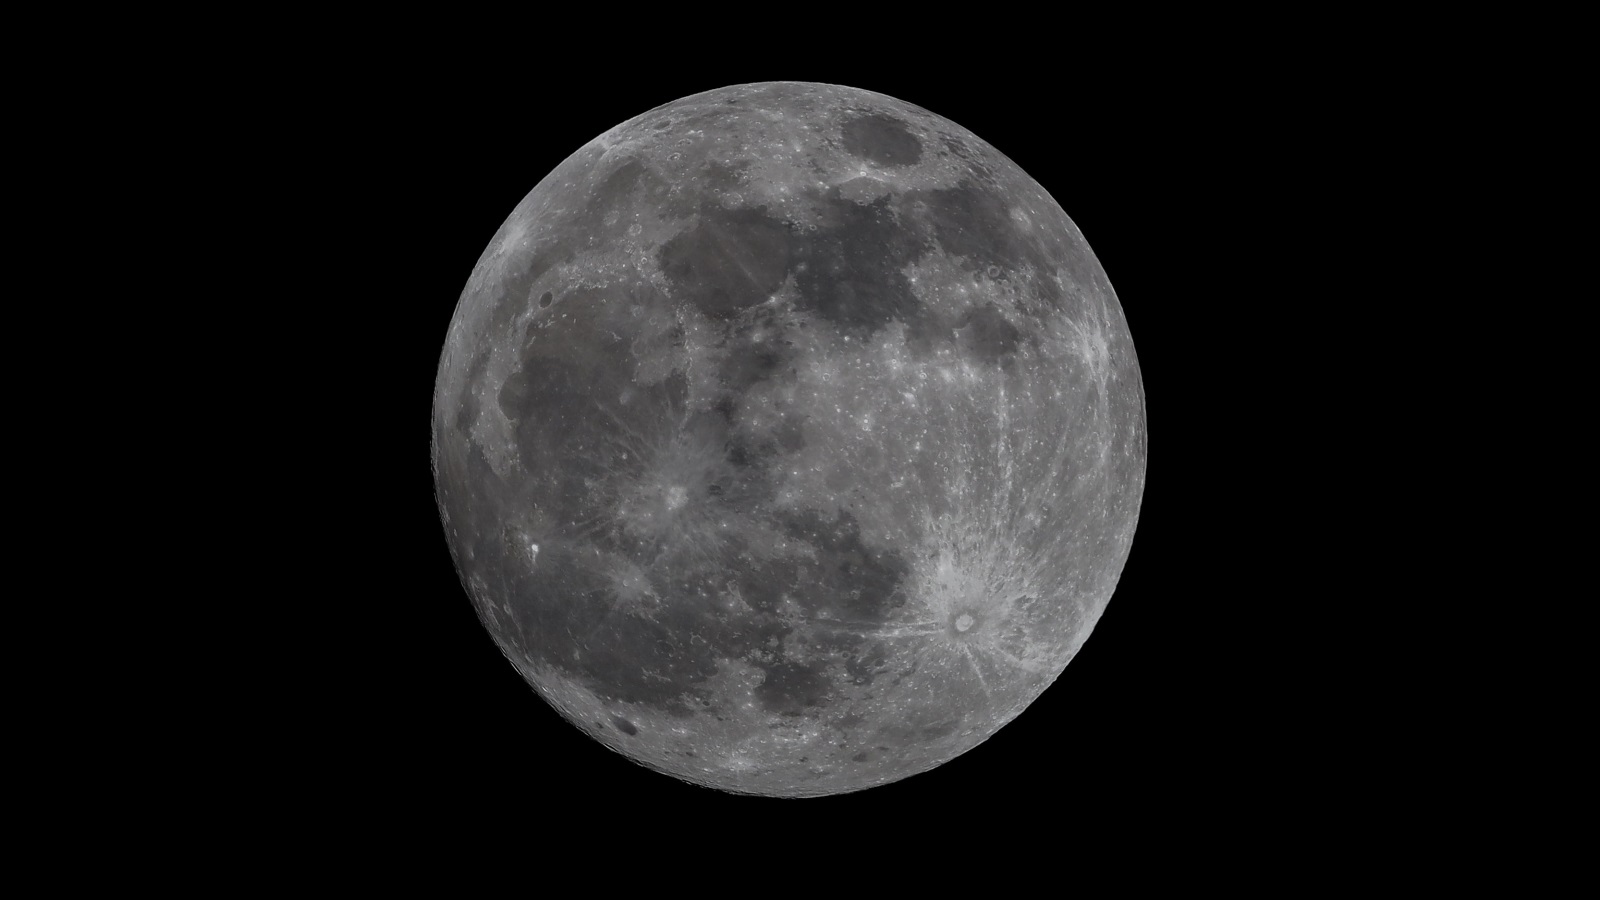 ‪تظهر الصور انهيارات أرضية في بقع تبدو ساطعة نسبيا مقارنة بسطح القمر الذي يبدو معتم اللون نتيجة تأثره بالأشعة الشمسية والفضائية‬ (غيتي)